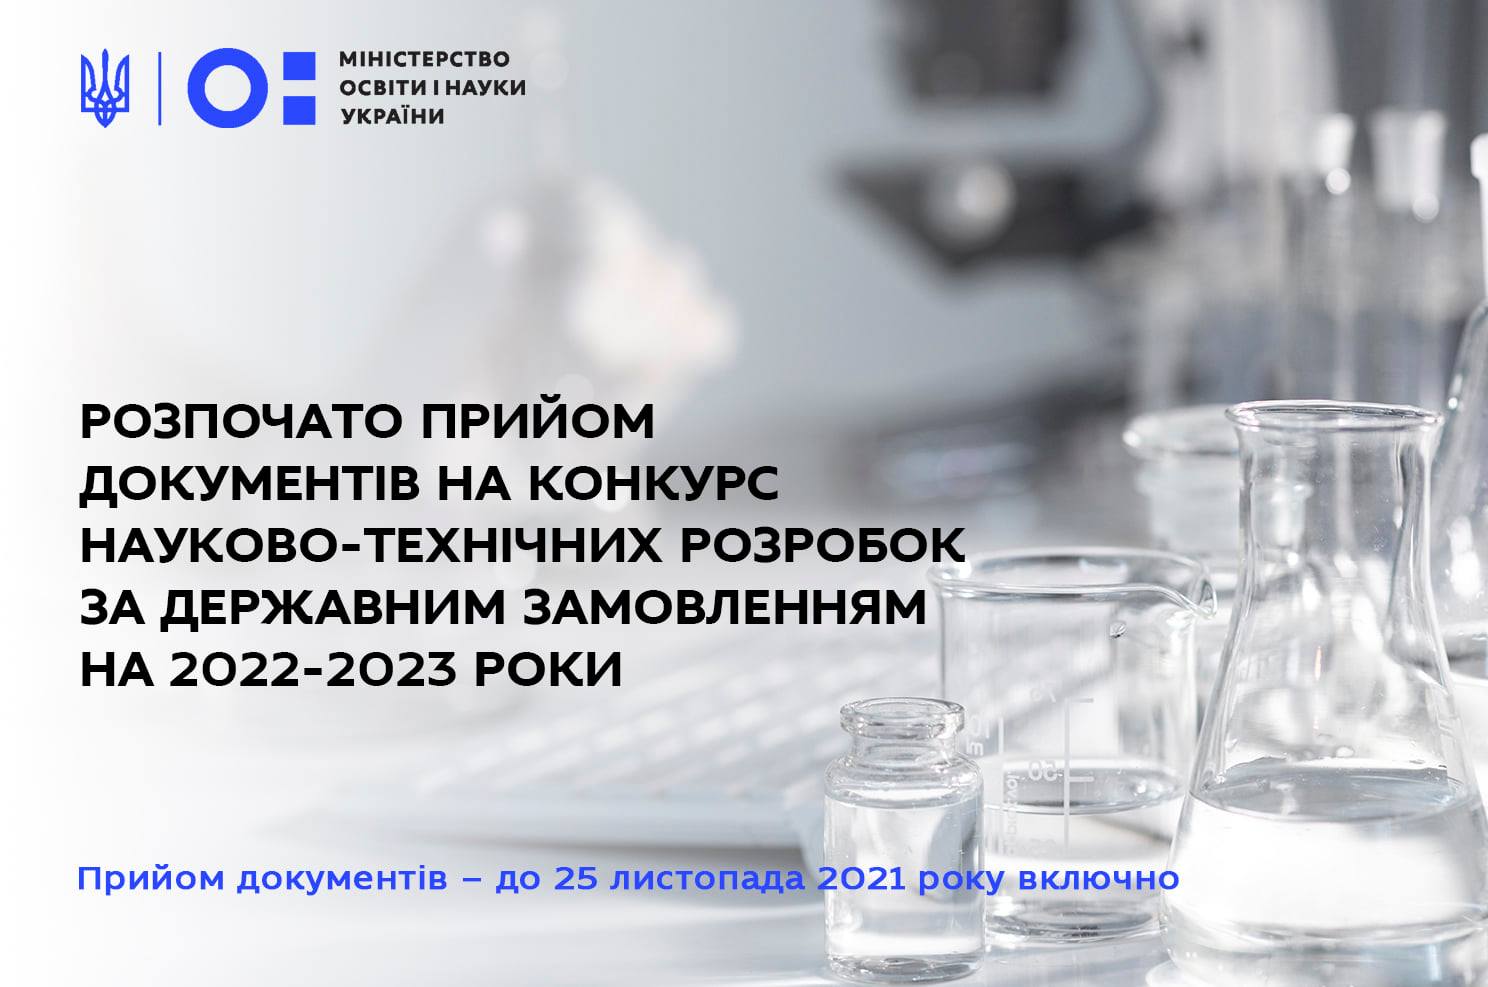 Конкурс науково-технічних розробок за державним замовленням на 2022-2023 роки